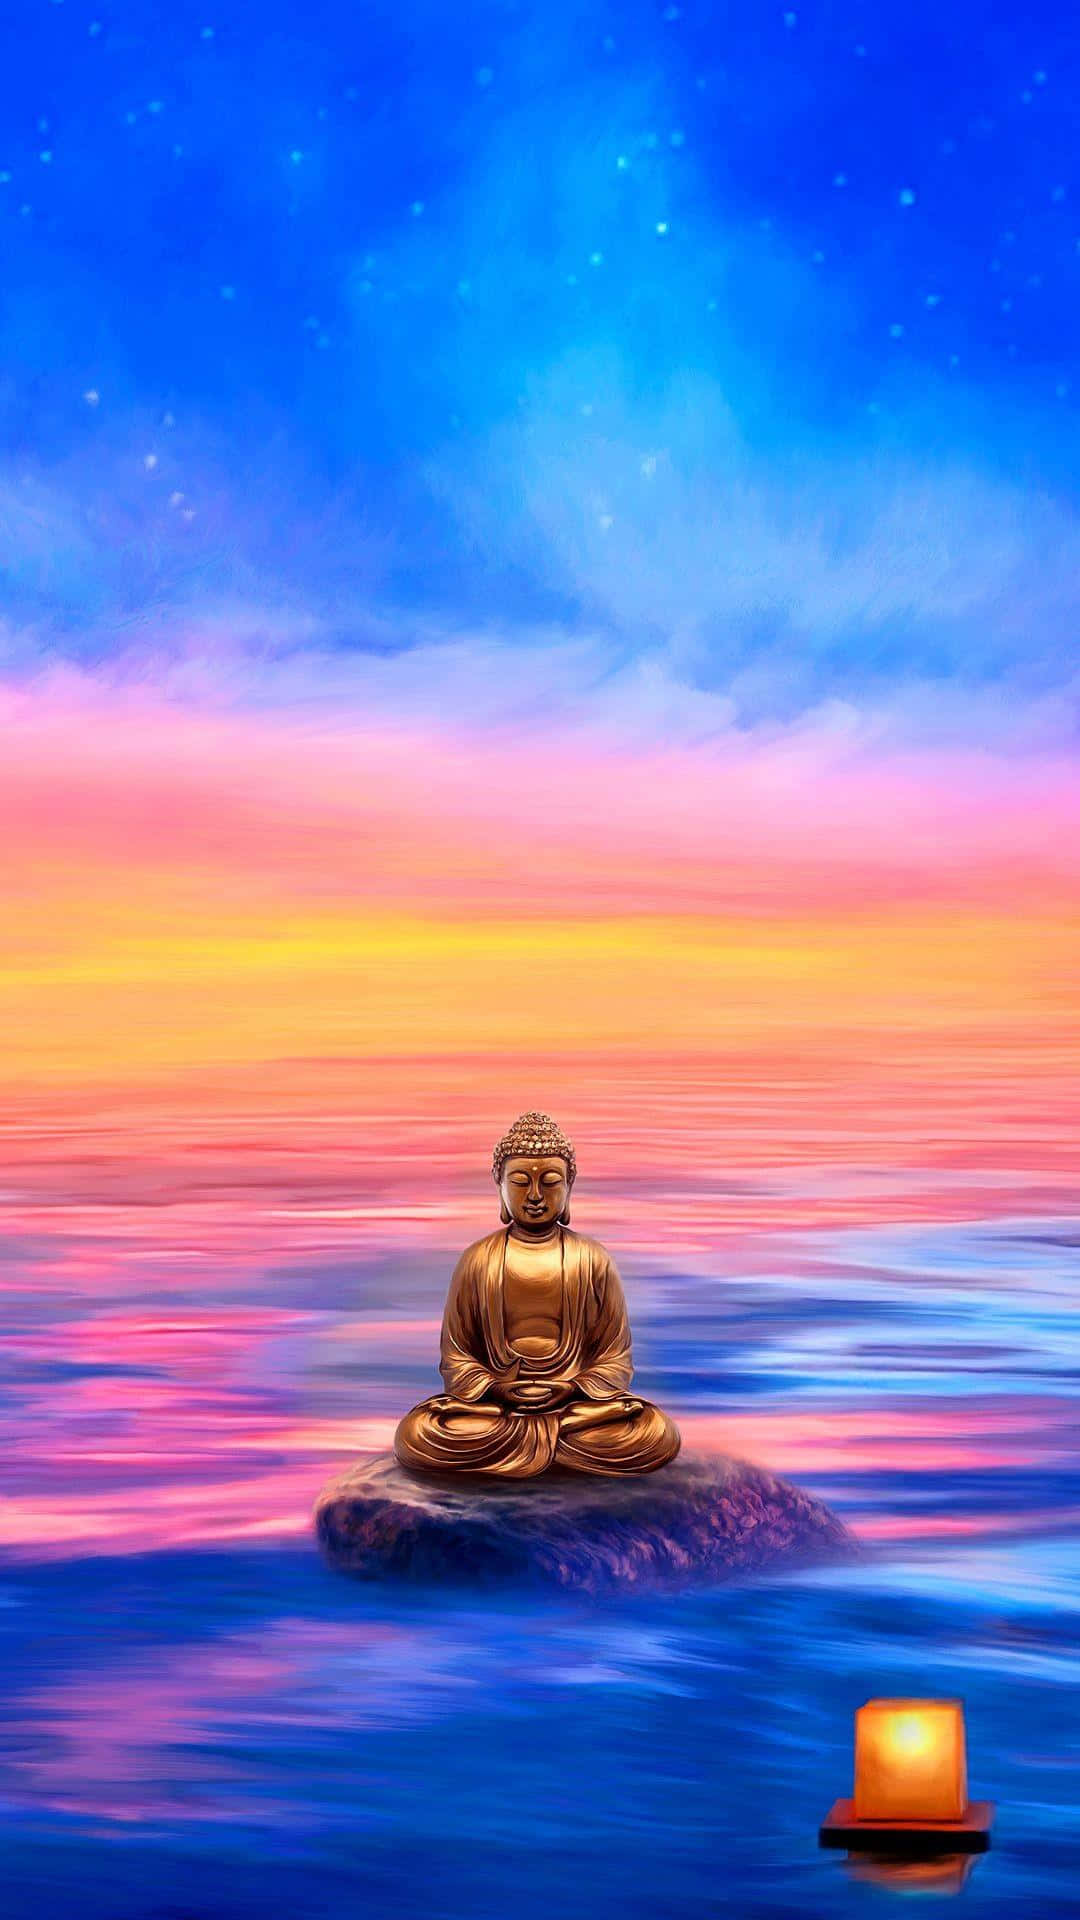 Find plads til fred i dit liv med Meditation Iphone Wallpaper. Wallpaper